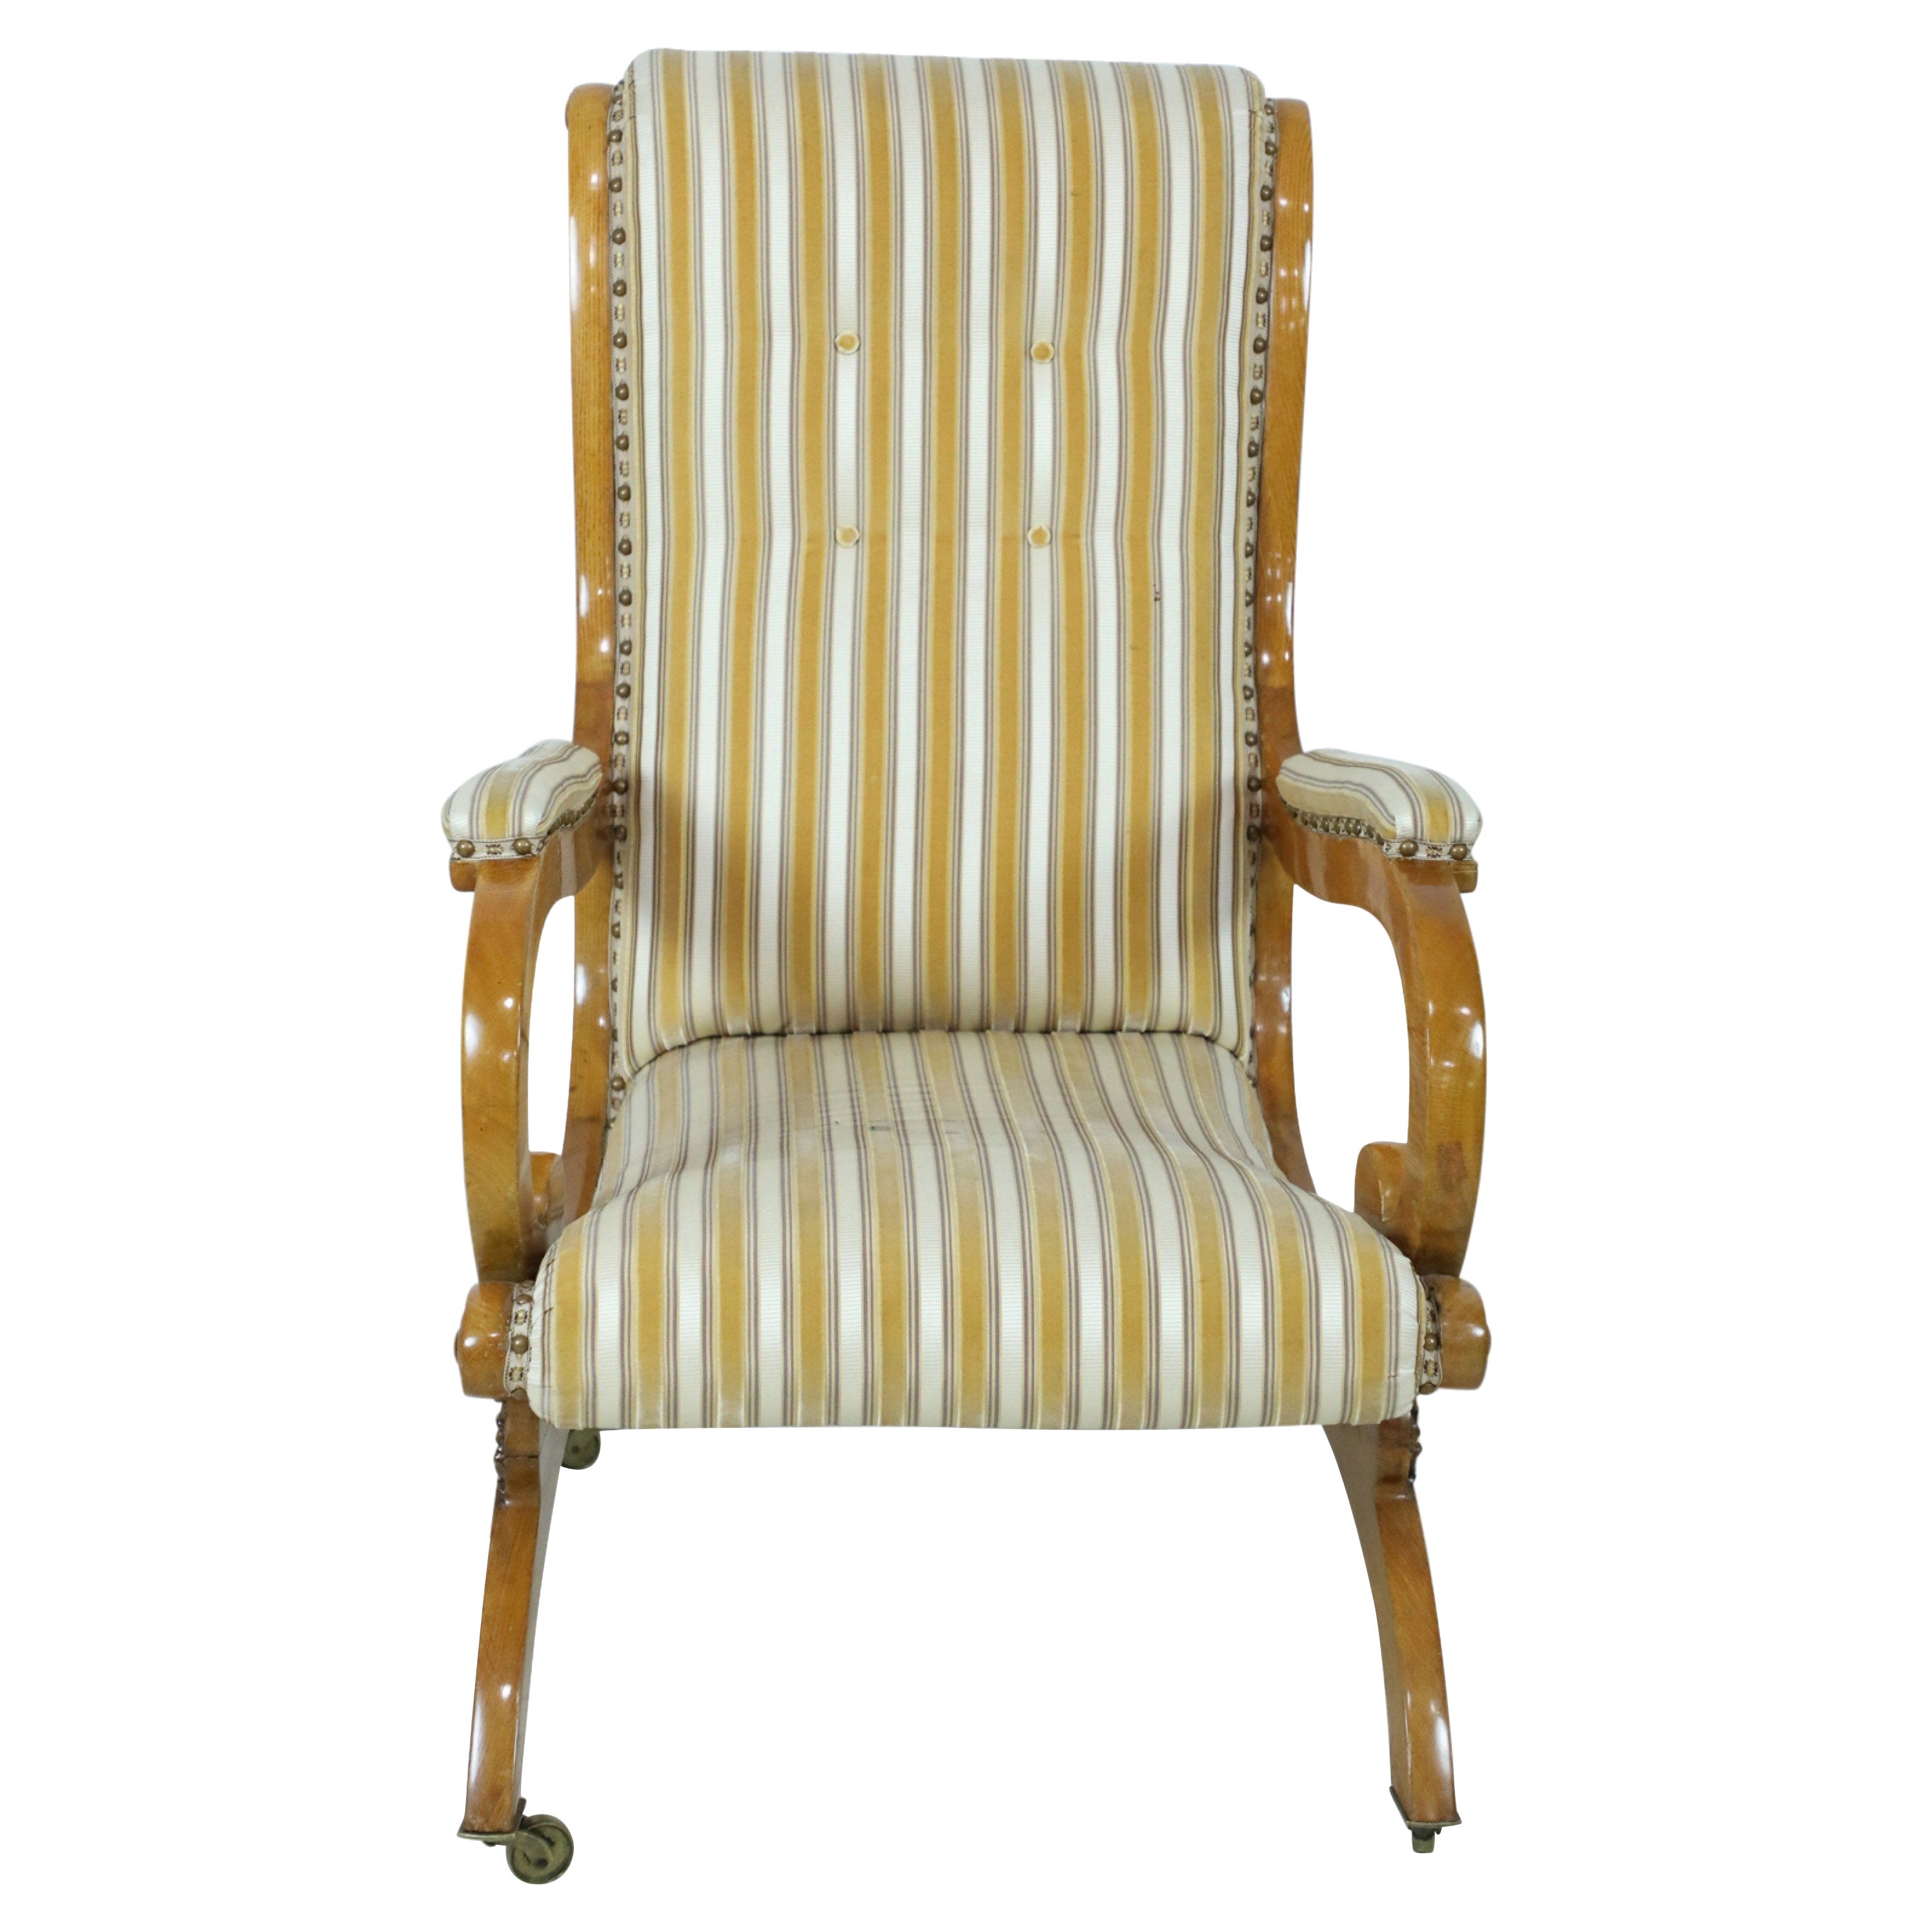 Englischer englischer viktorianischer Sessel aus blondem Holz mit gestreifter Polsterung